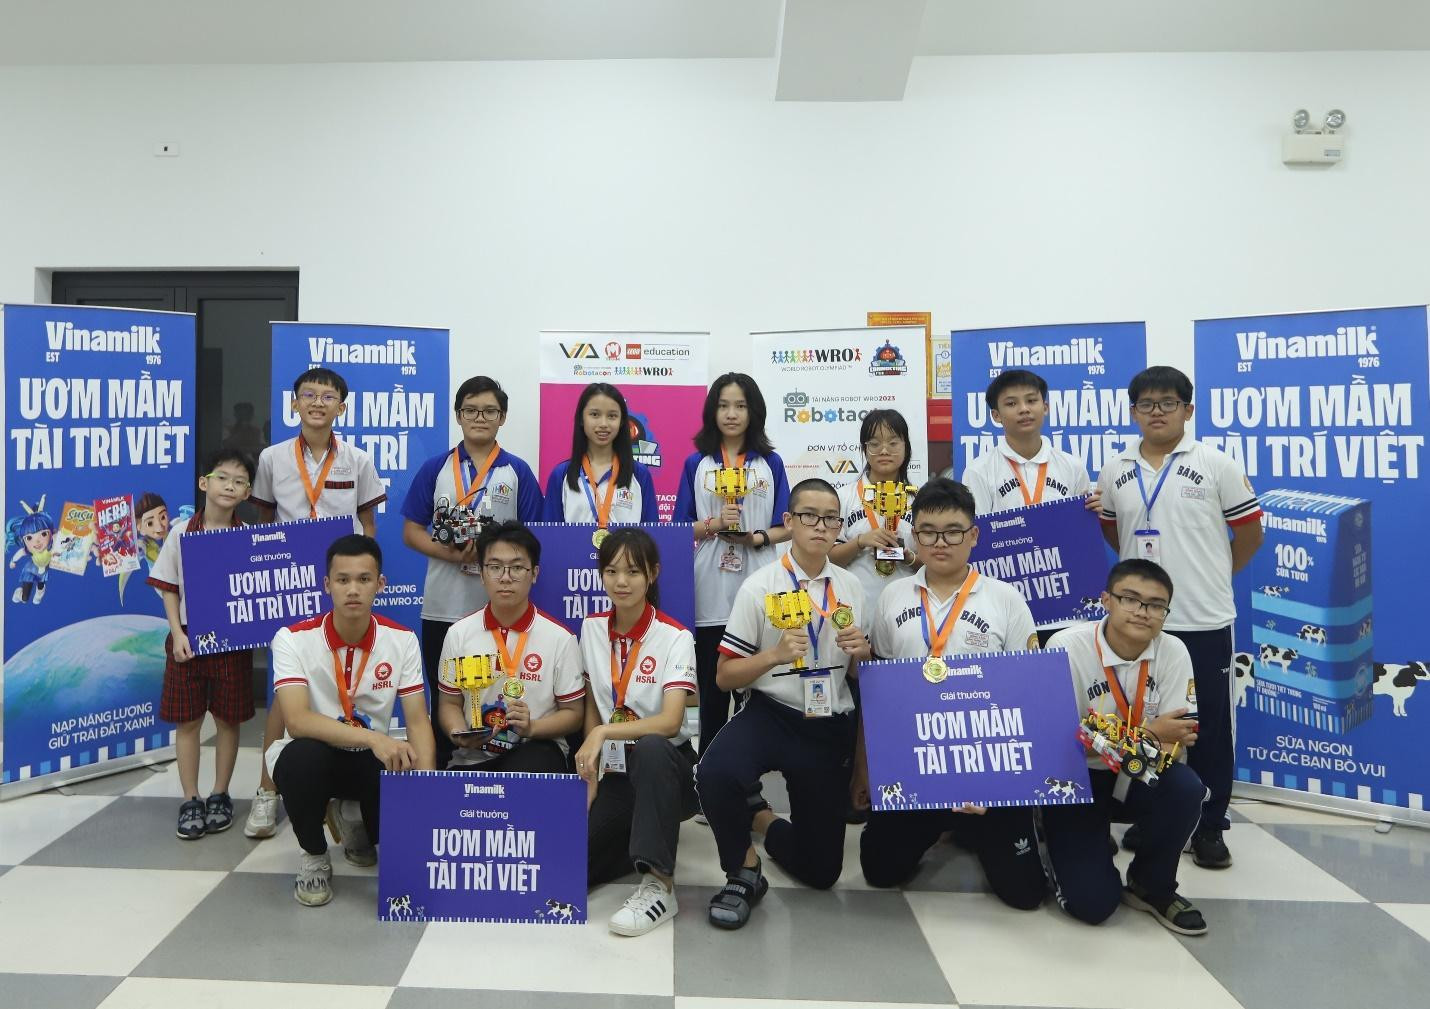 Các đội vô địch 5 bảng hào hứng nhận giải thưởng “Ươm mầm tài trí Việt” từ Vinamilk.